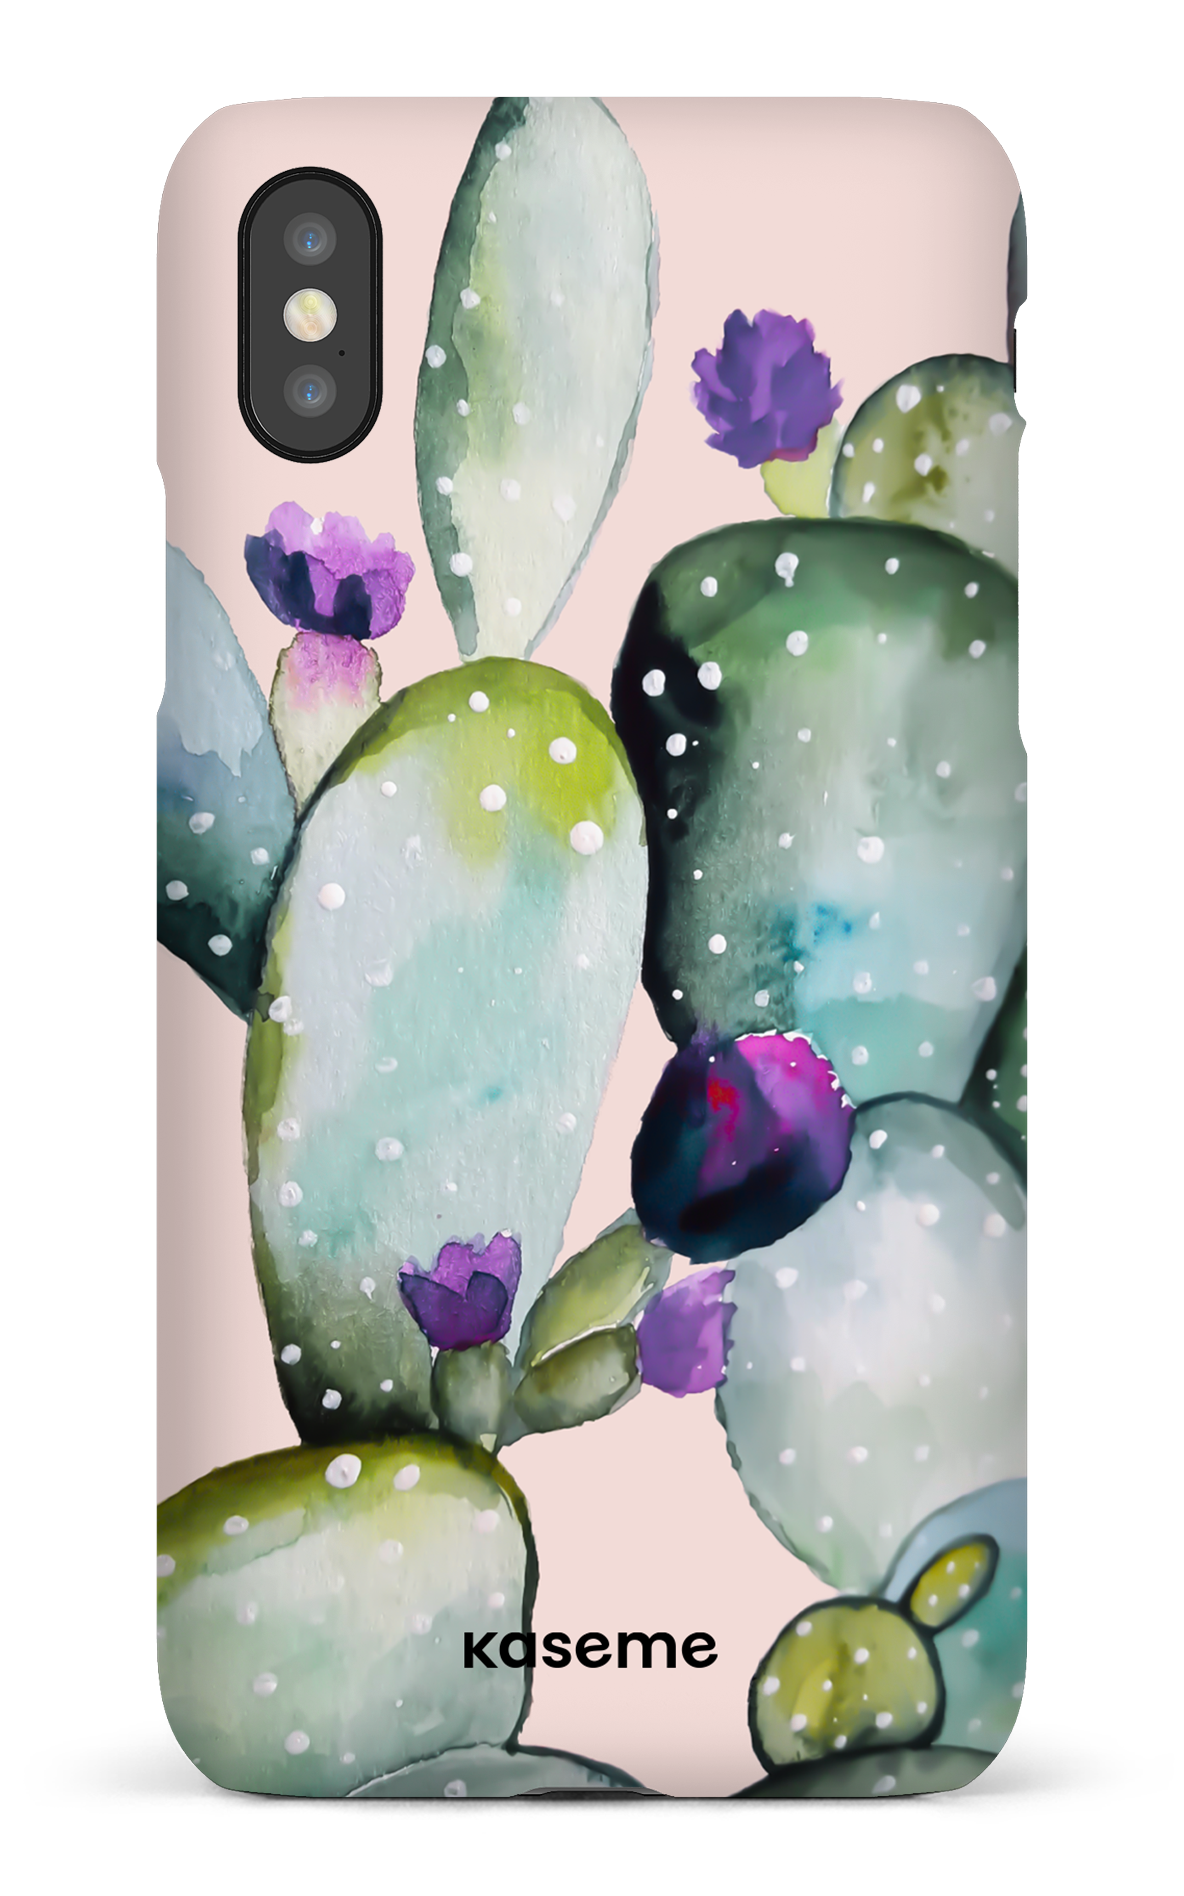 Cactus Flower - iPhone X/XS